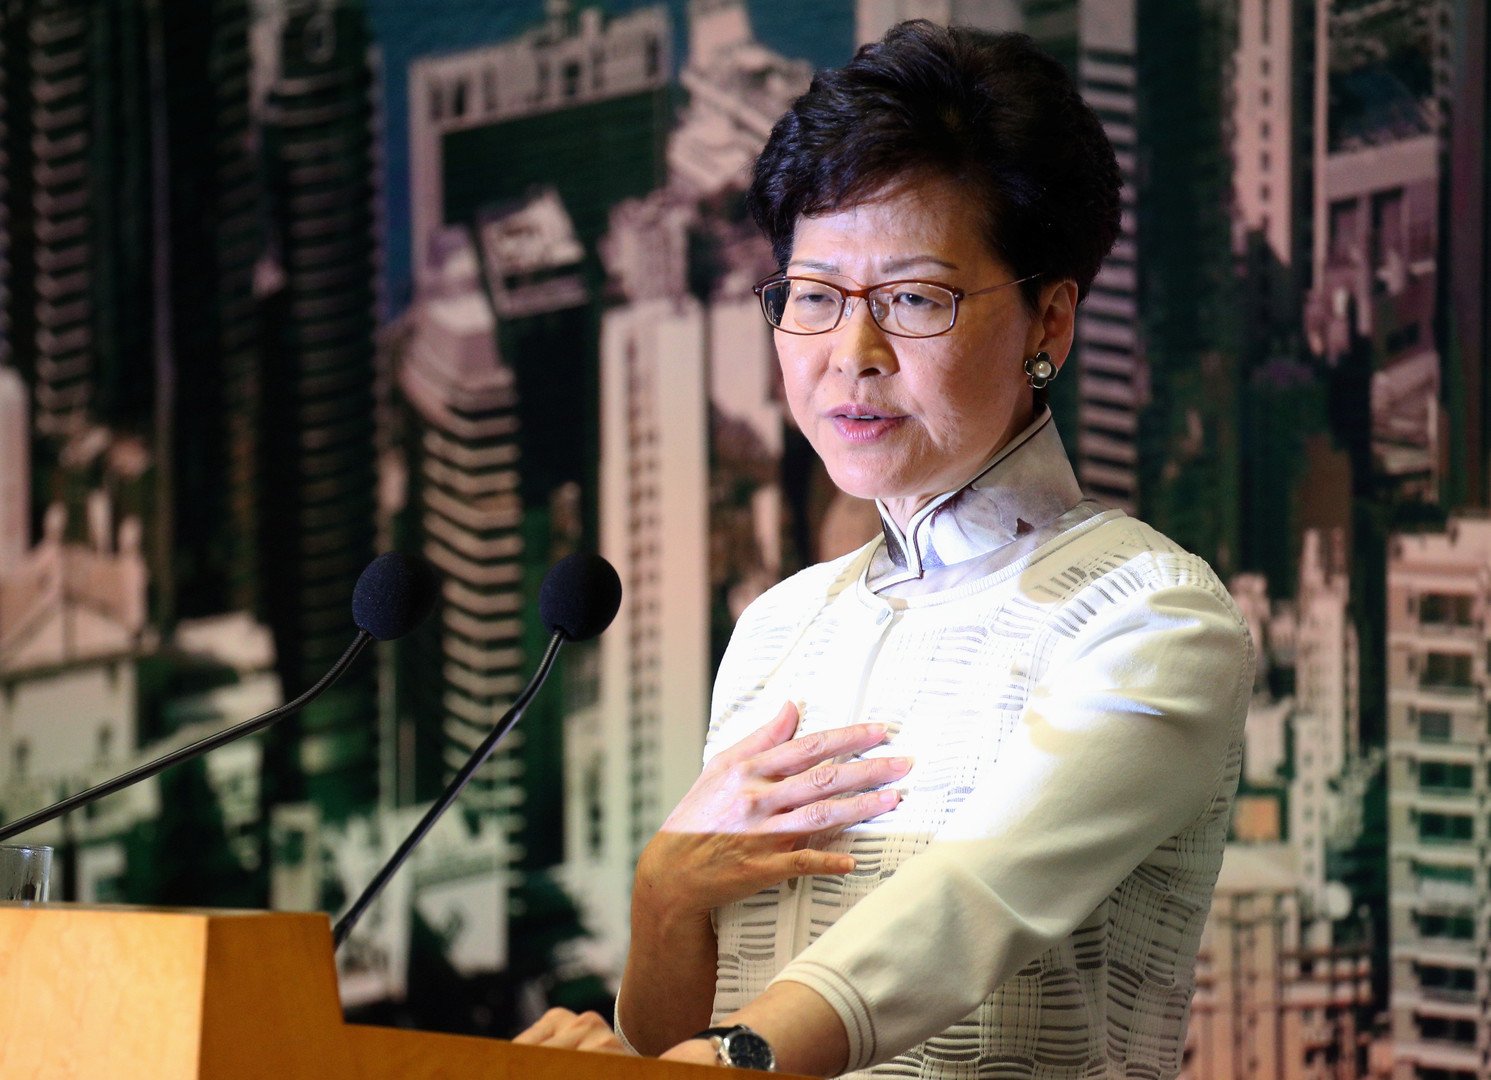 احتجاجات في هونغ كونغ تدفع برئيستها للاعتذار ورفض الاستقالة